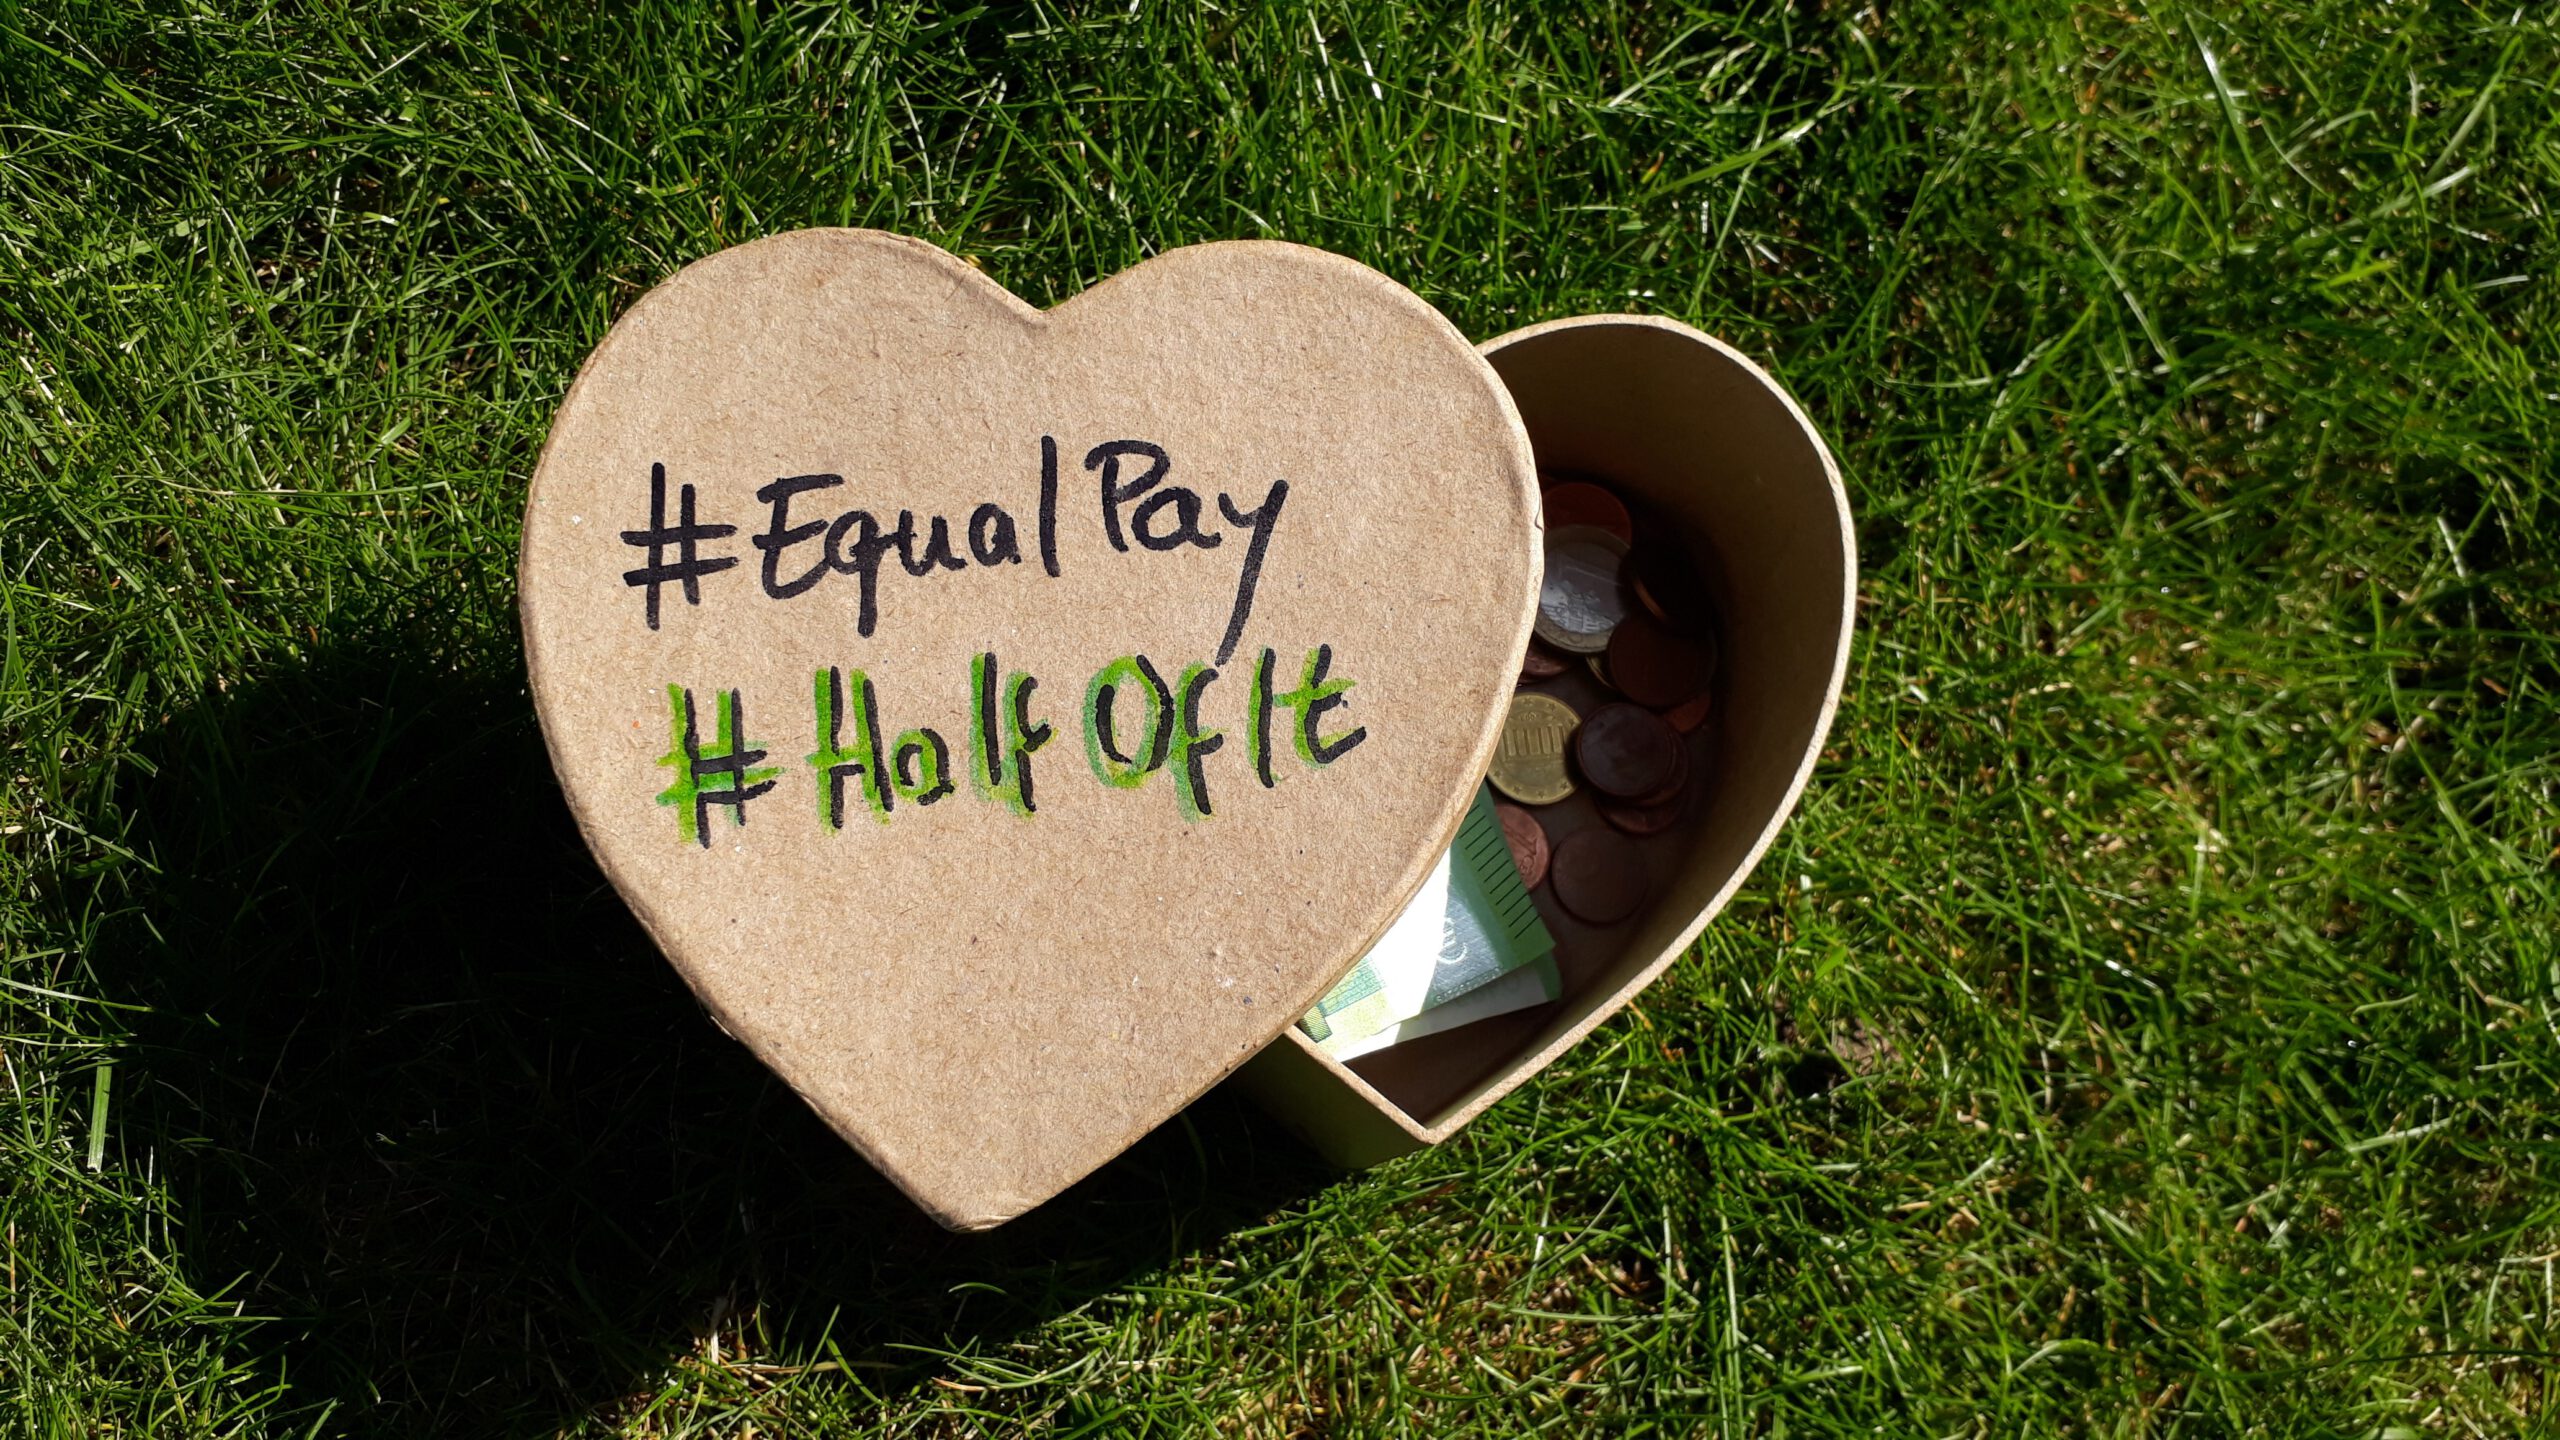 Foto mit einer Herzförmigen Kiste, die im Gras liegt und auf der #Halfofit und #EqualPay steht